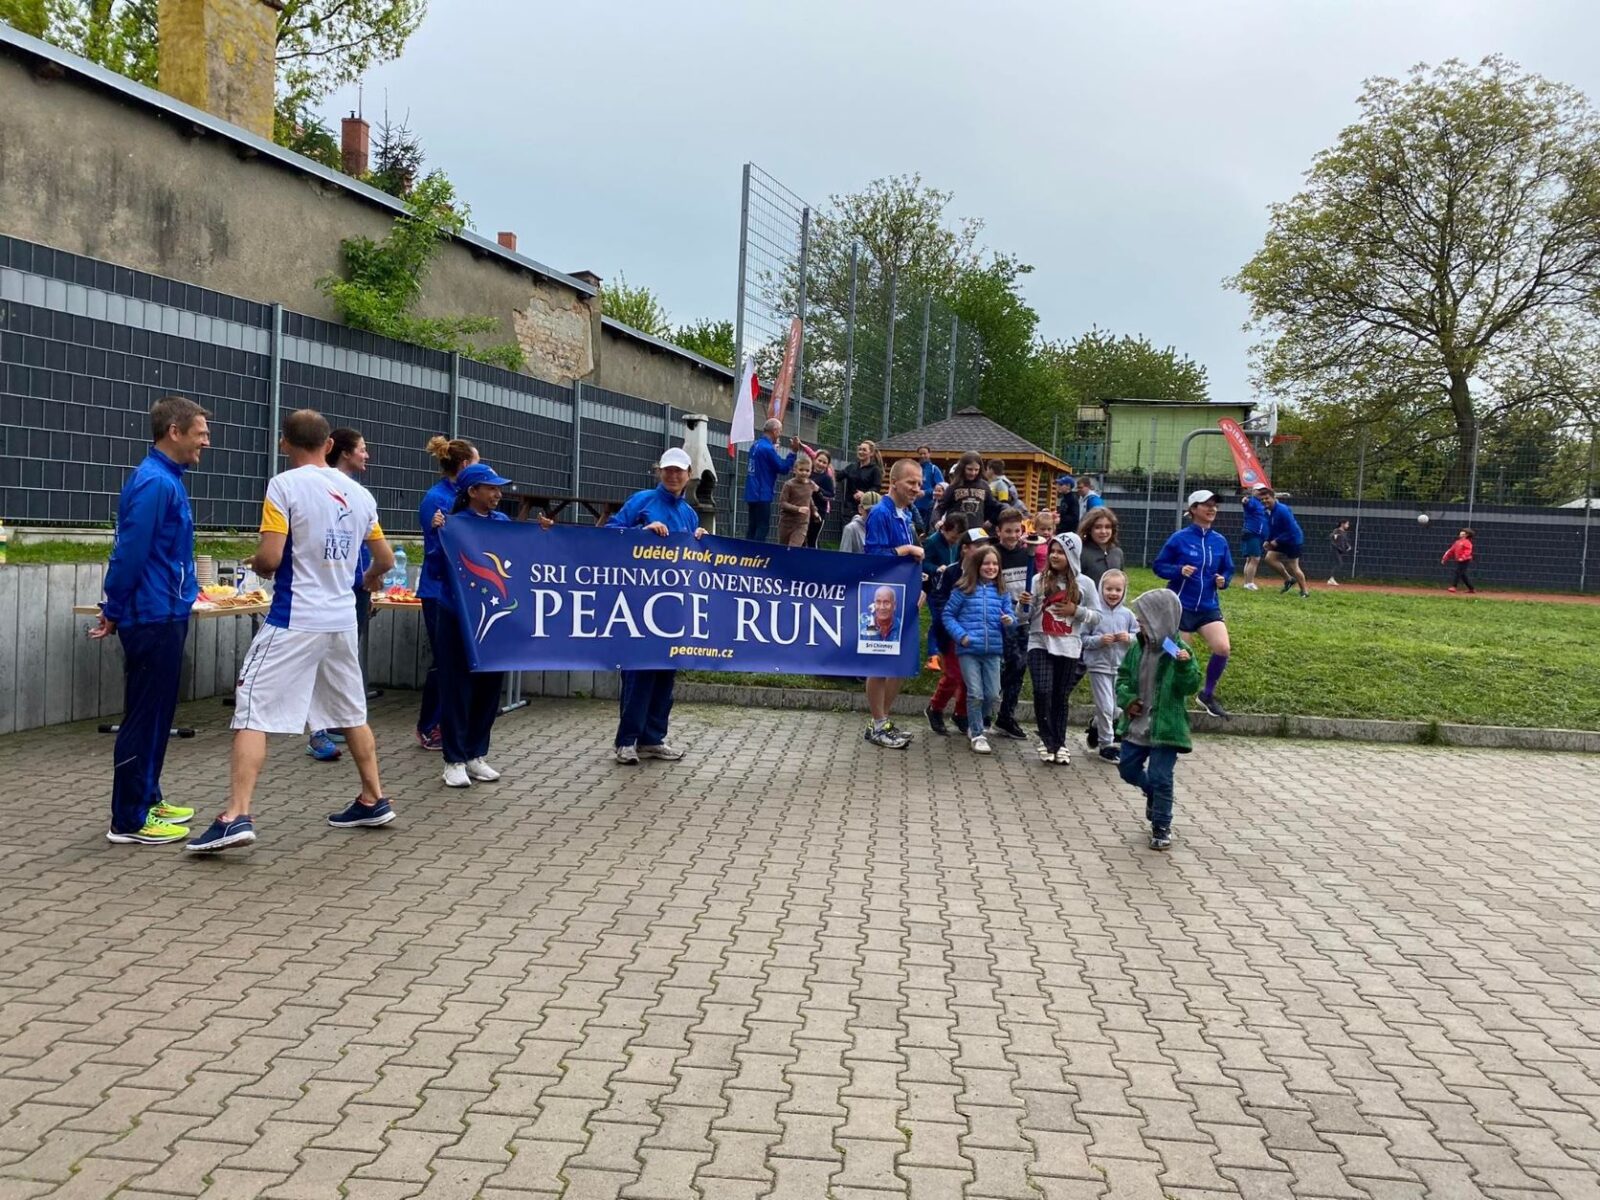 Zdjęcie przedstawia grupę biegaczy trzymających baner Peace Run